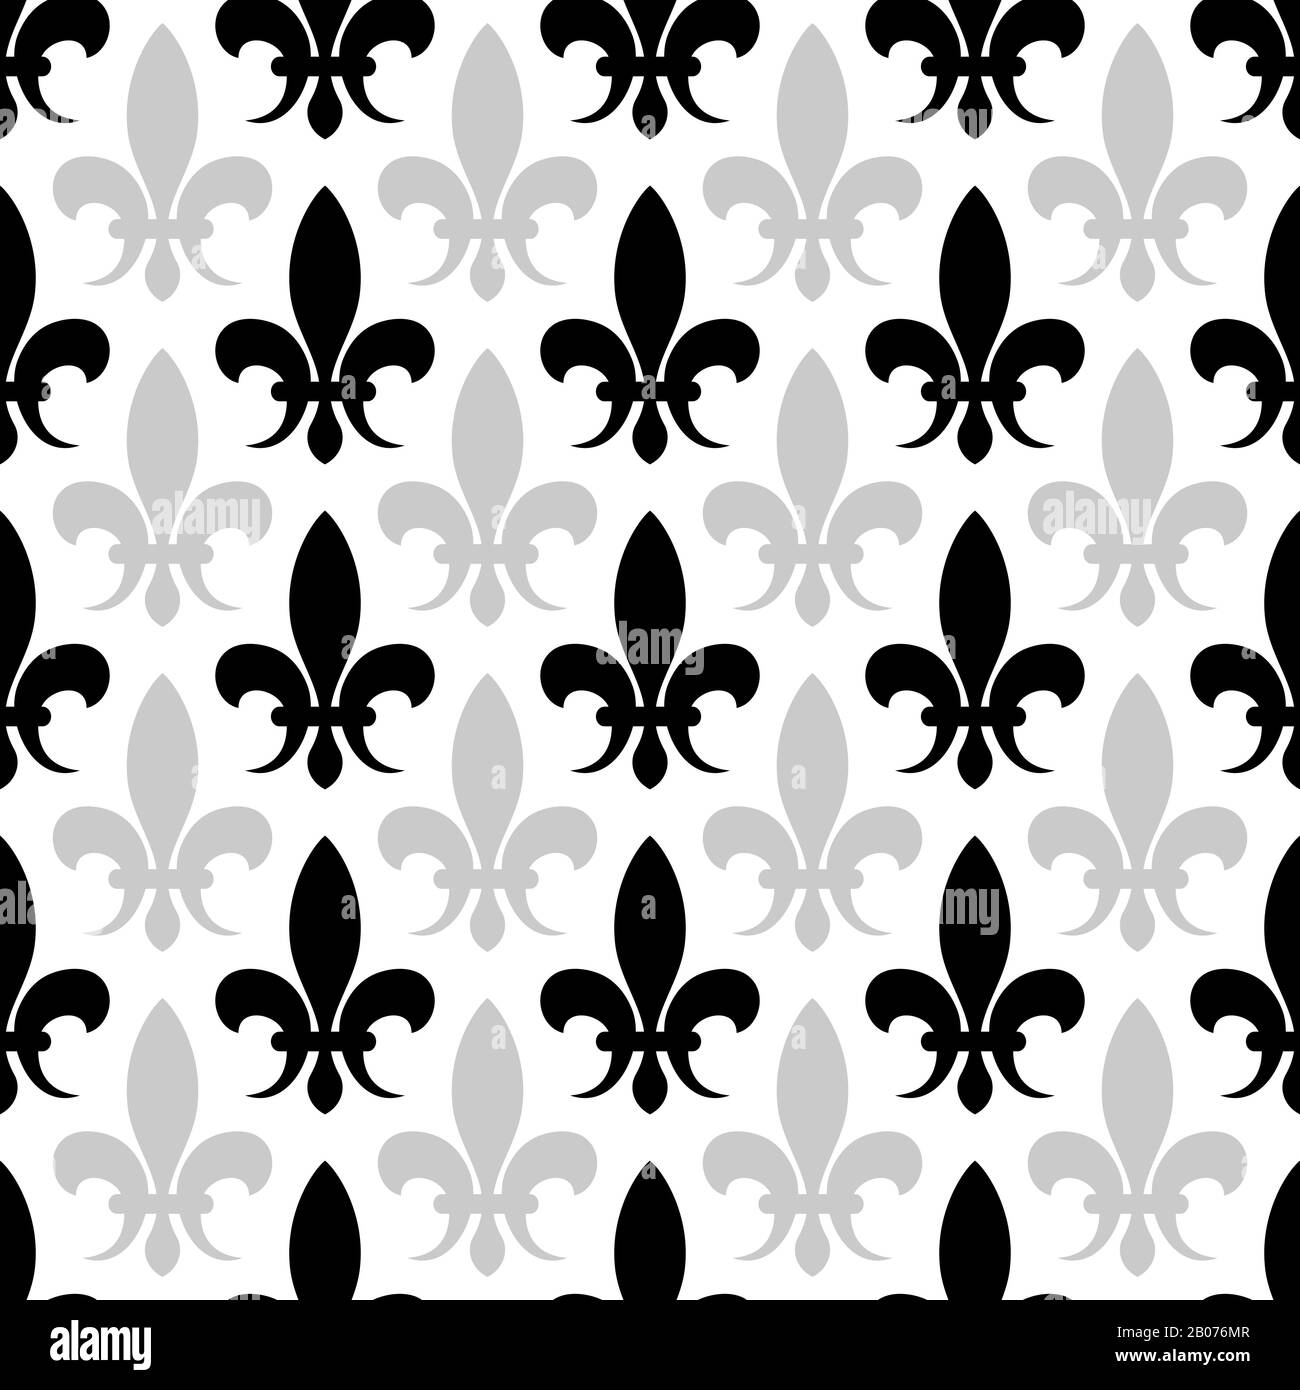 Vector fleur de LIS nahtloses Muster in schwarz-weißer Farbe. Illustration mit Blumenhintergrund Stock Vektor